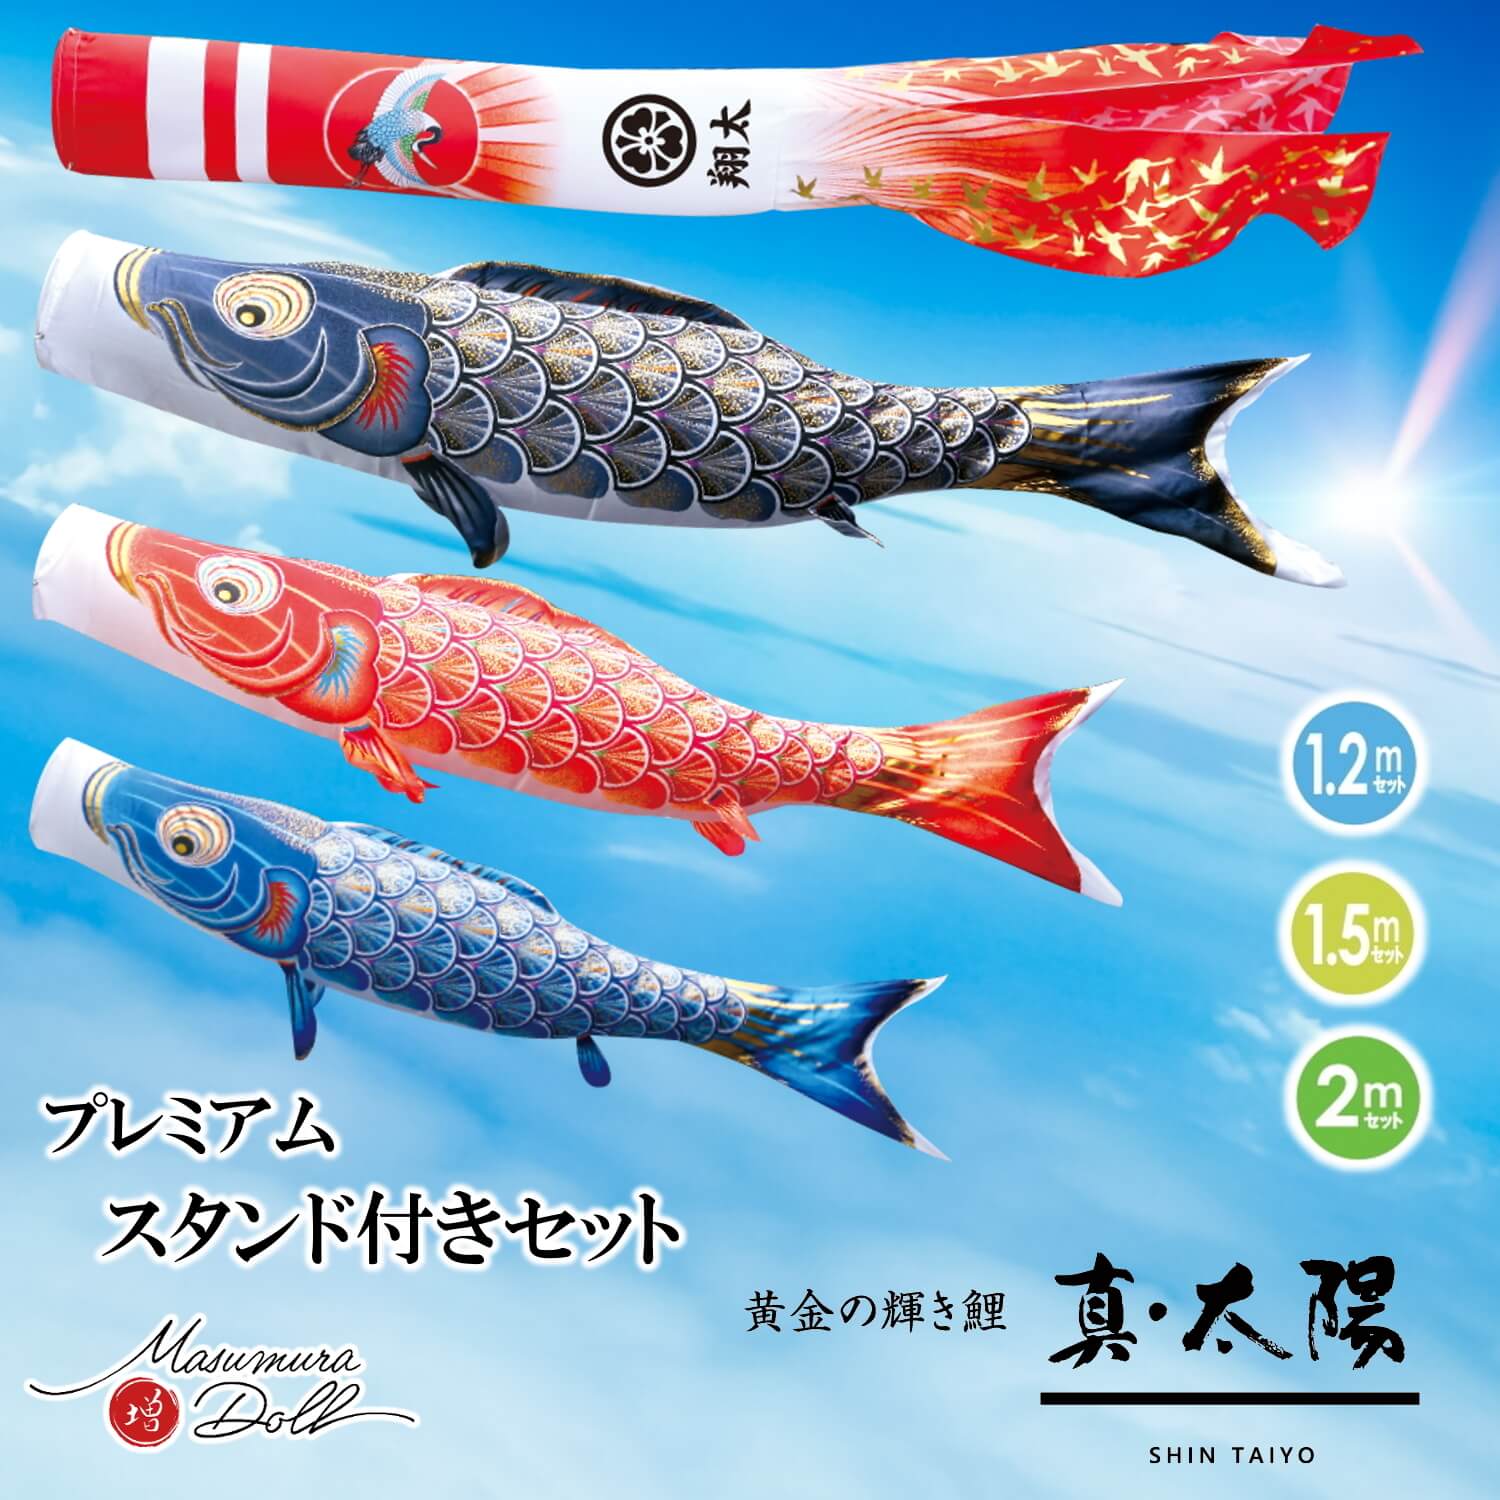 【大幅値下げ】徳永こいのぼり ミニ鯉 阪神タイガース 鯉のぼりセットミニ鯉